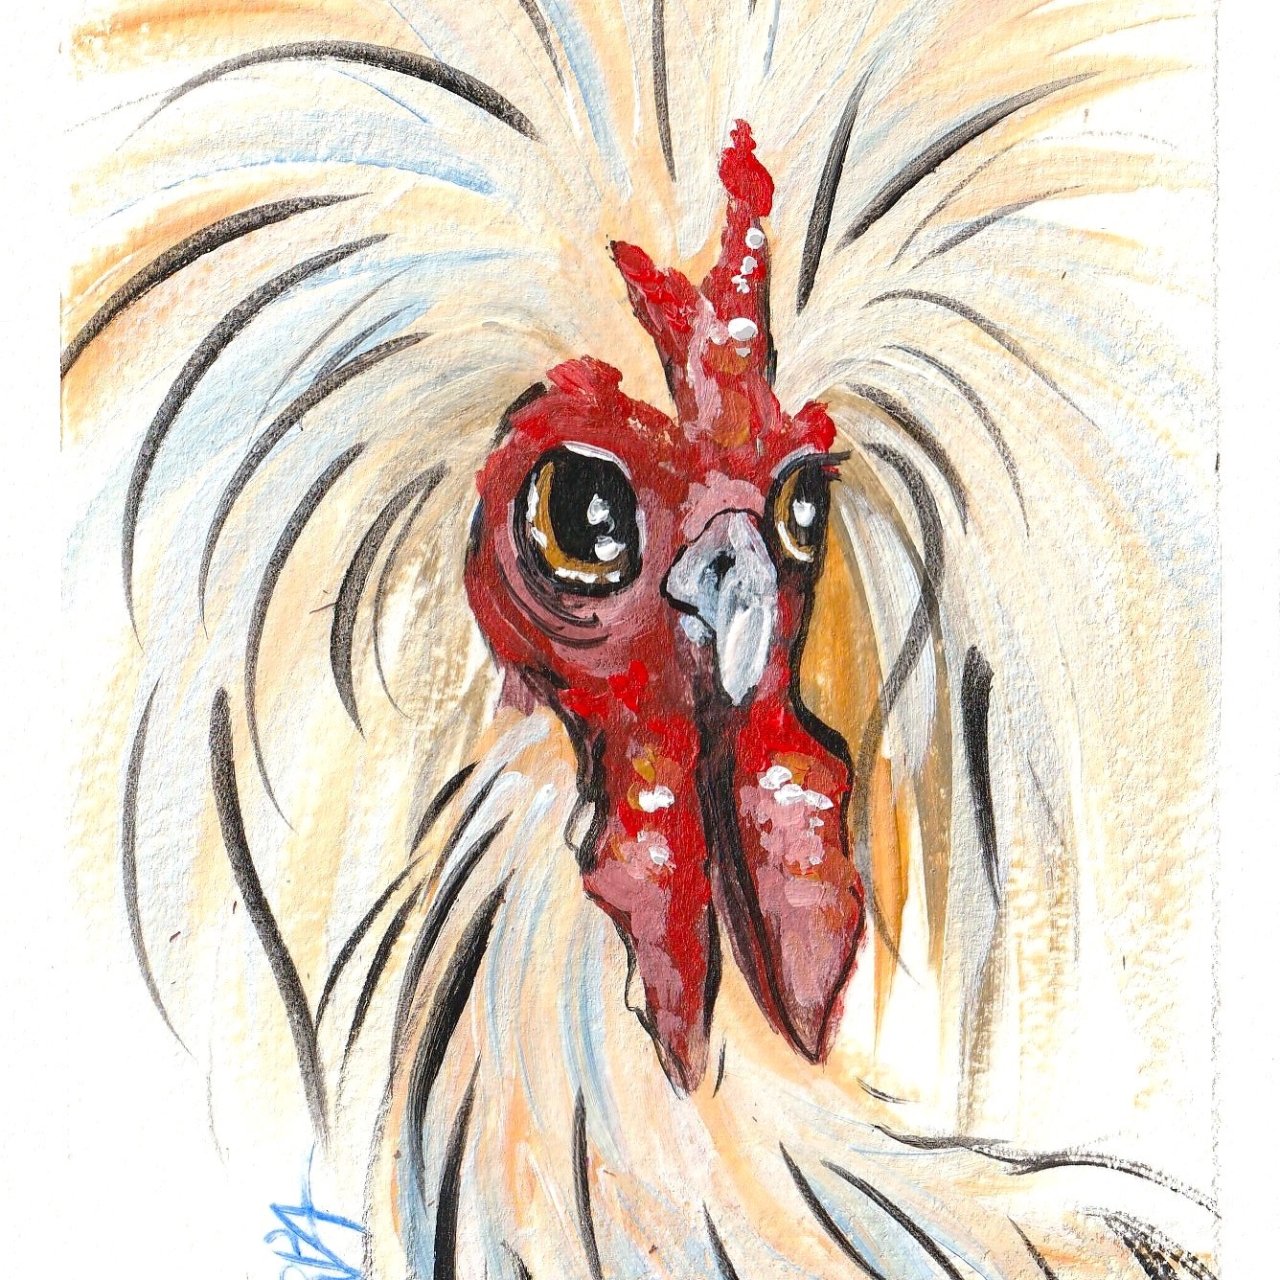 watercolor chicken patron